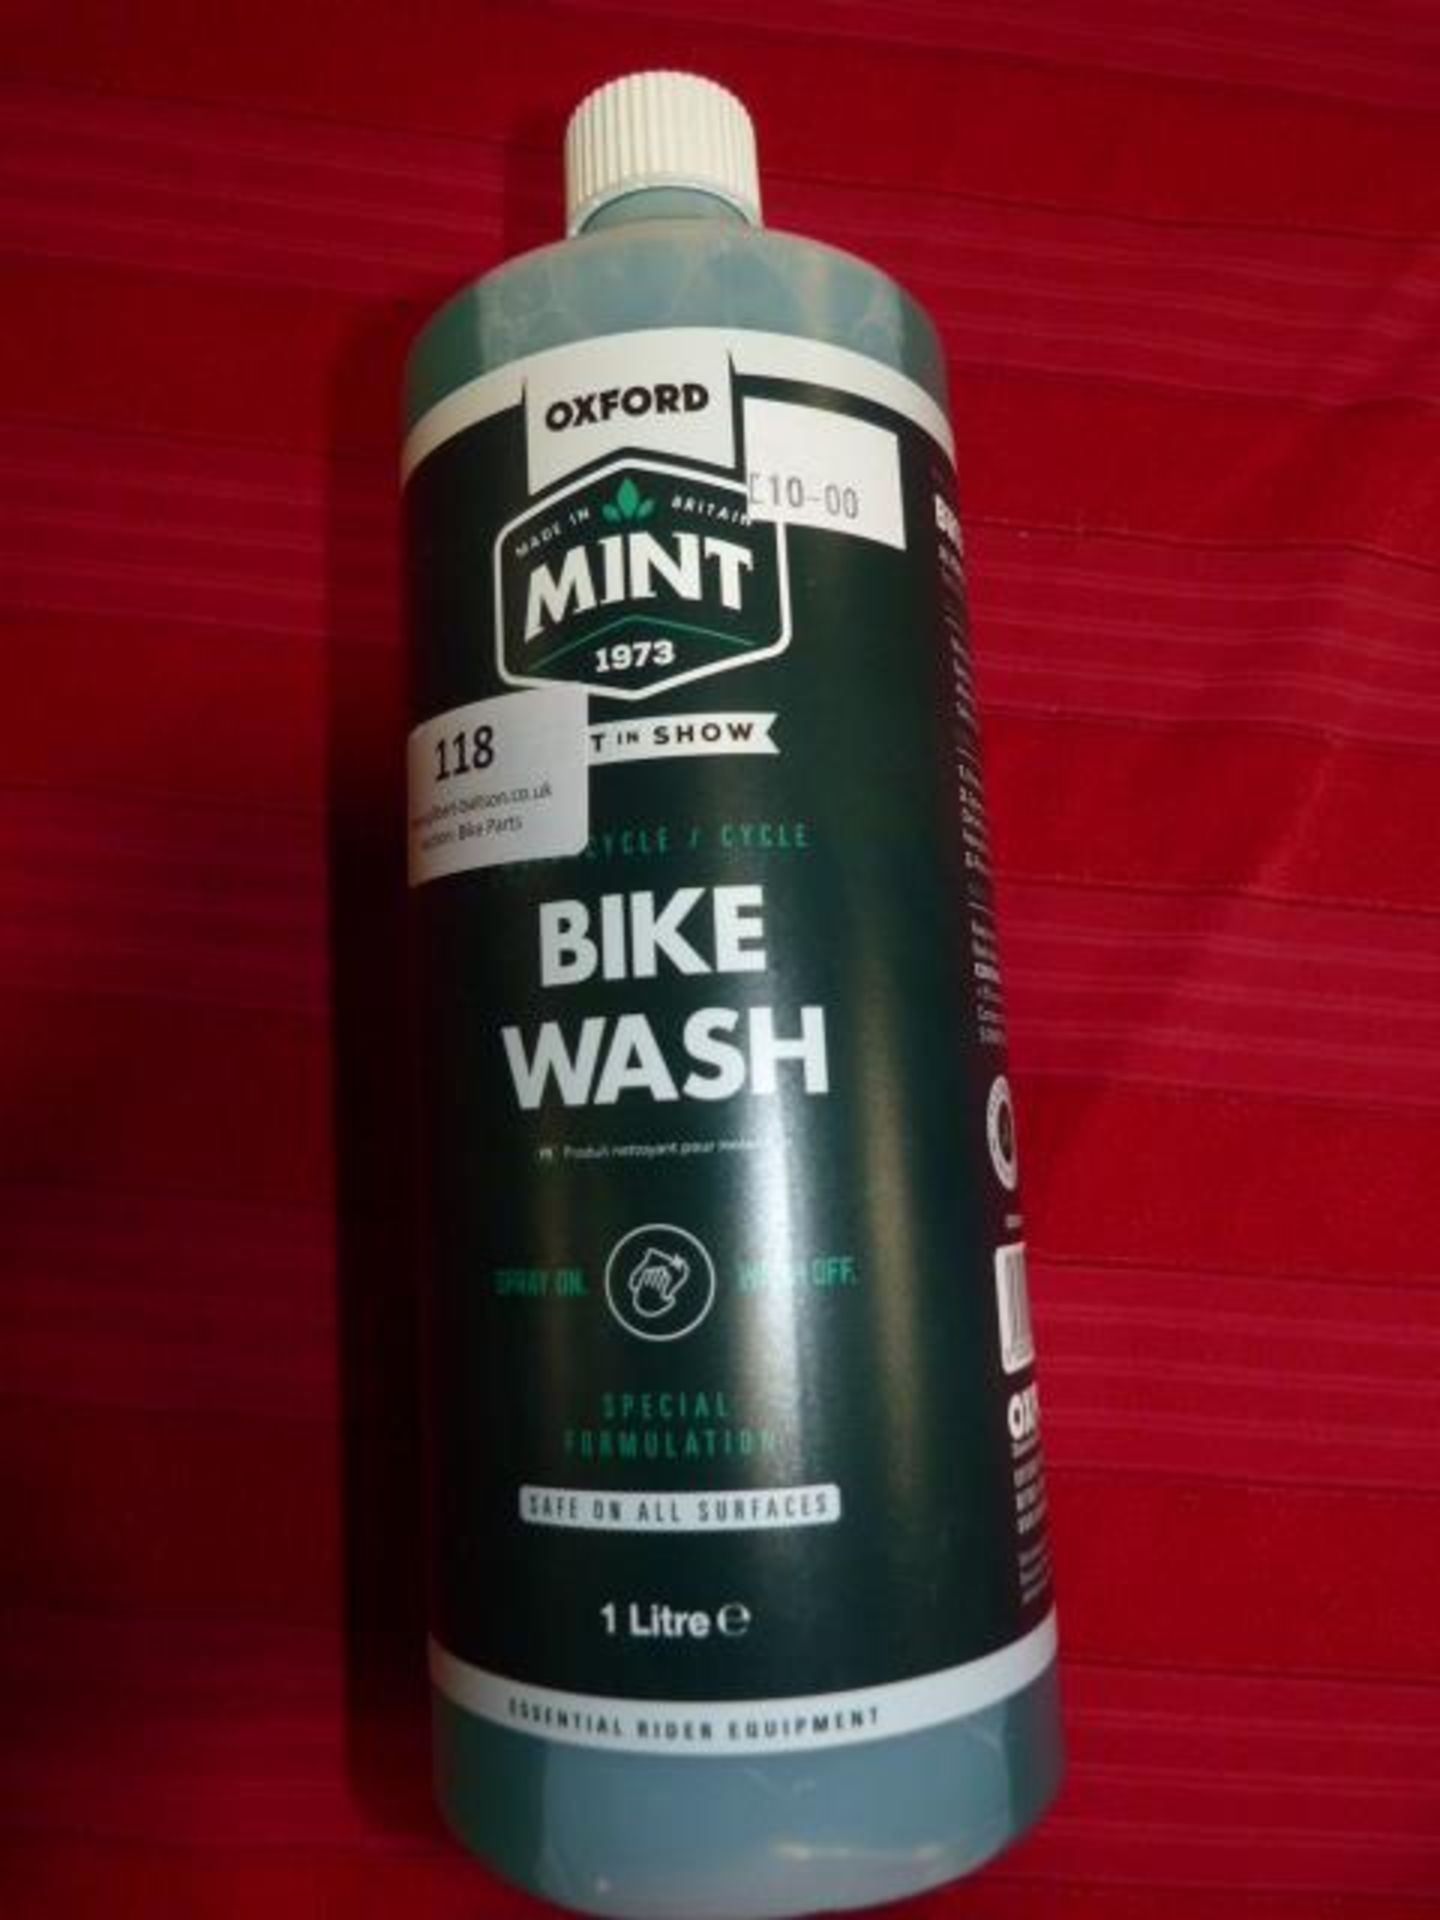 *1L Bottle of Mint Bike Wash